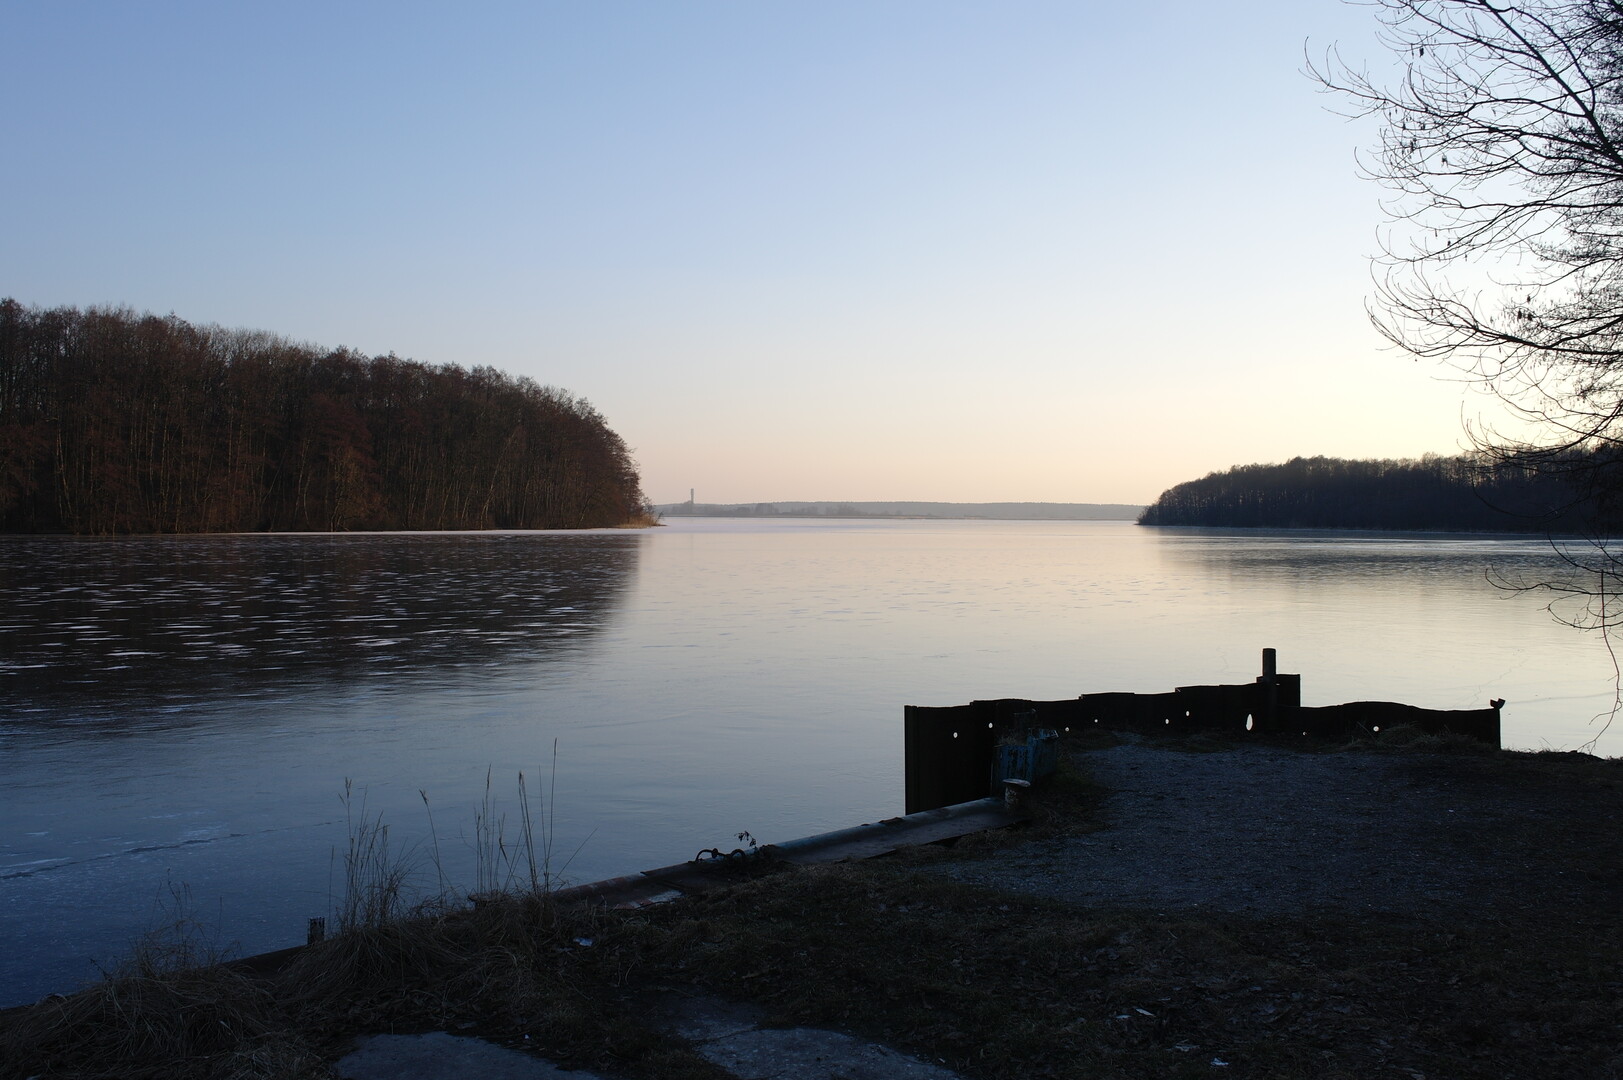 Zum Rangsdorfer See, schön vereist.
Auch hier sieht man den Fernsehturm auf dem Kumberg östlich von Glienick.